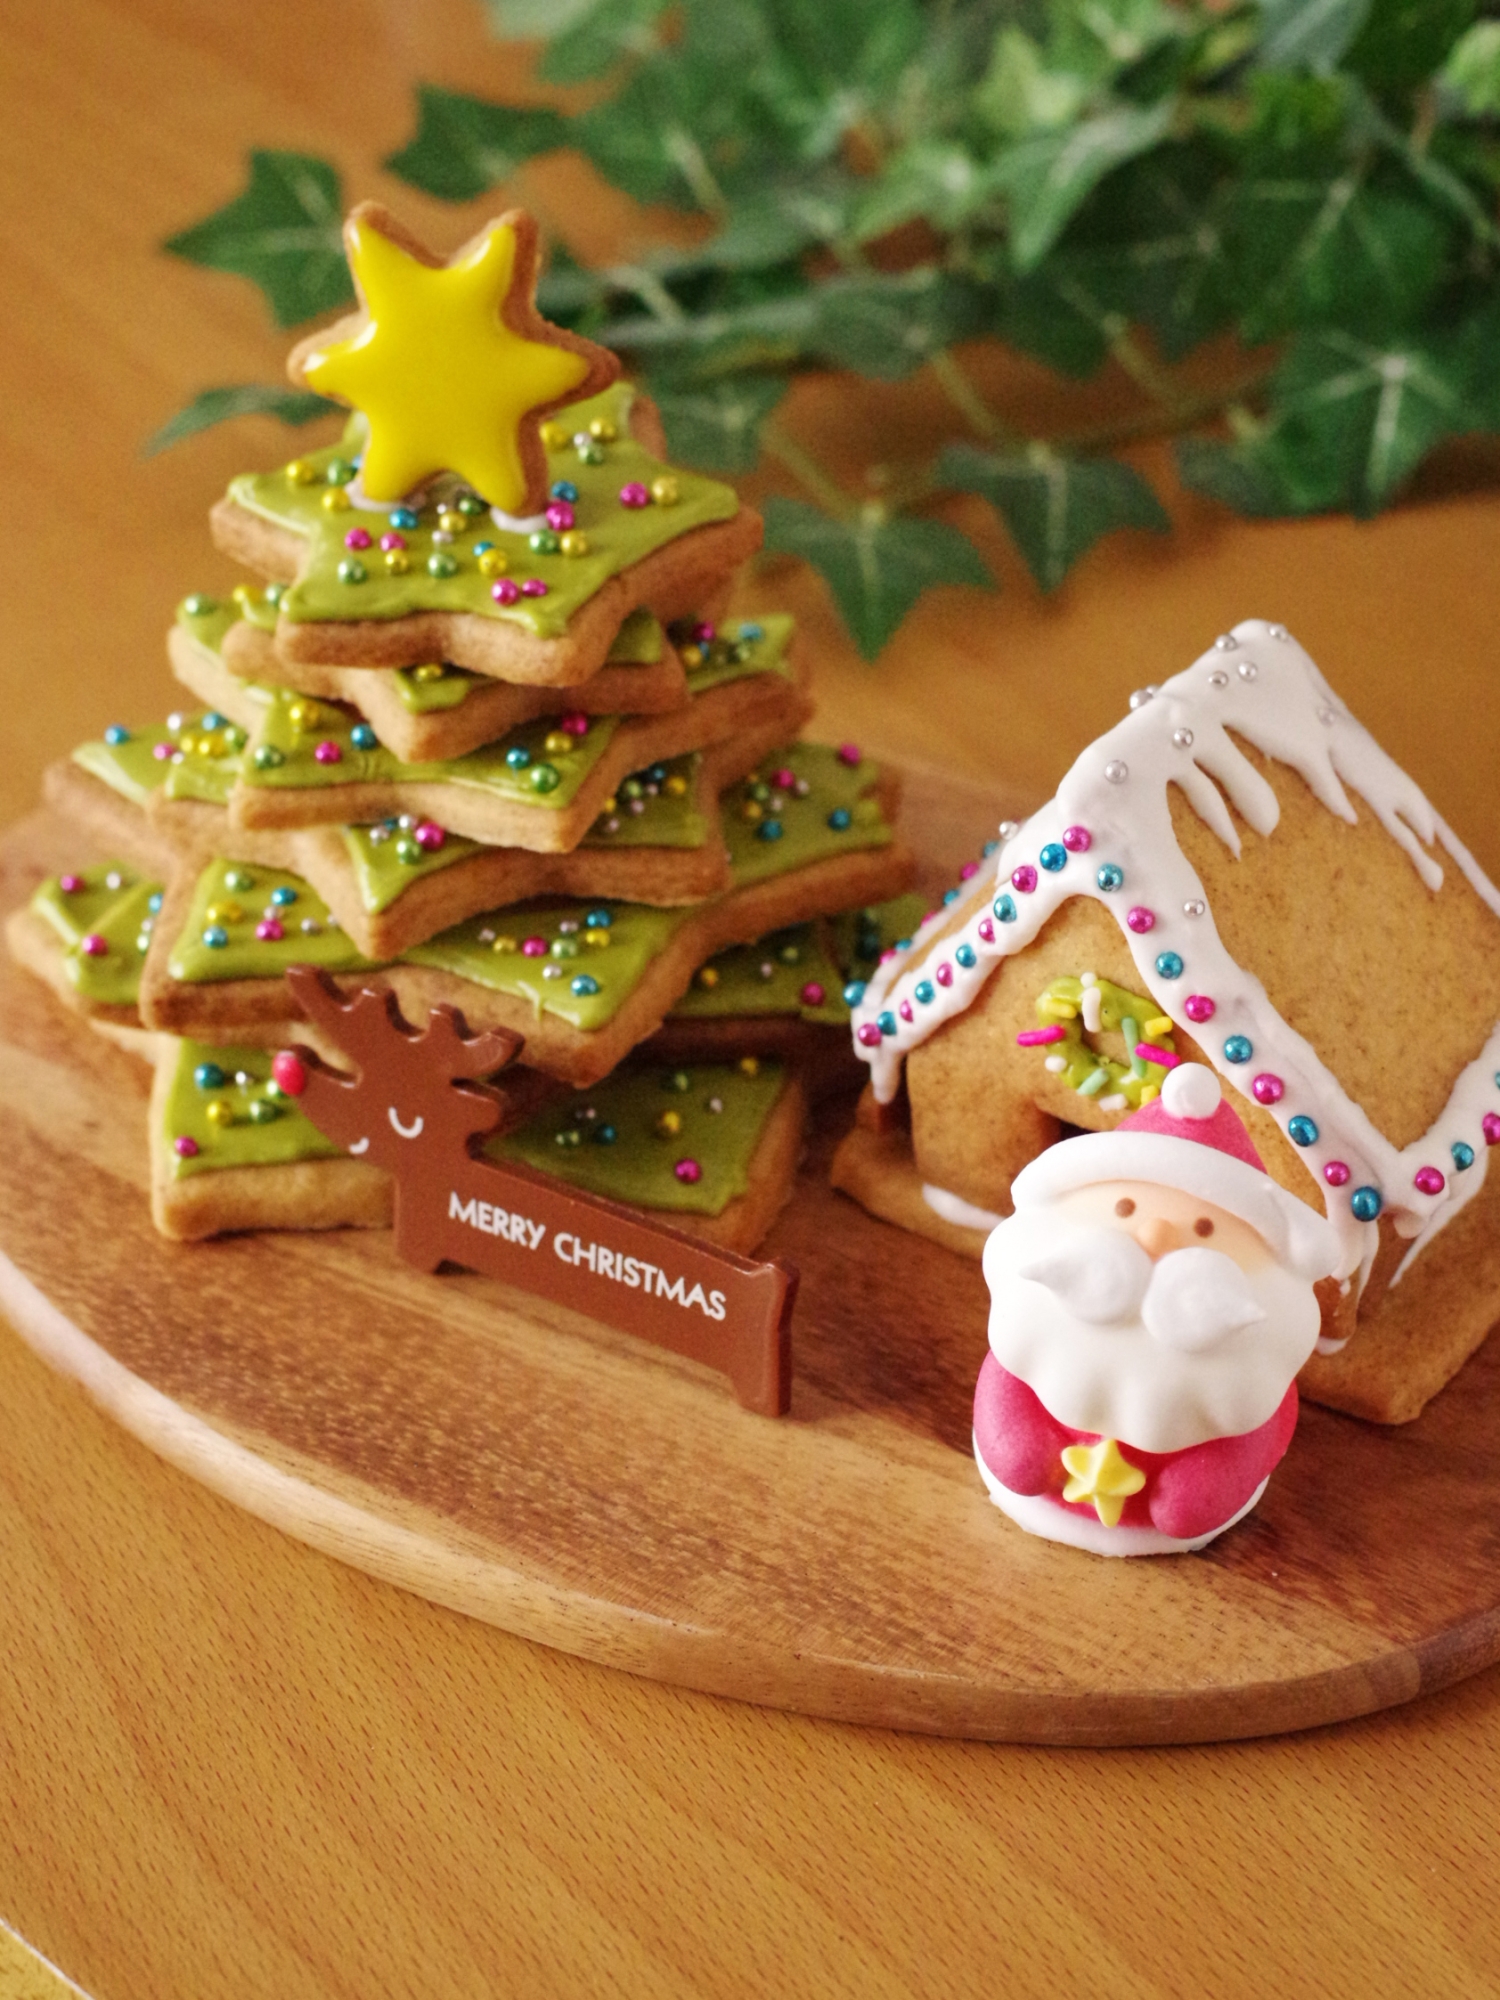 アイシングクッキーが積み重なったツリーと立体的なクッキーの家がのっている木製皿